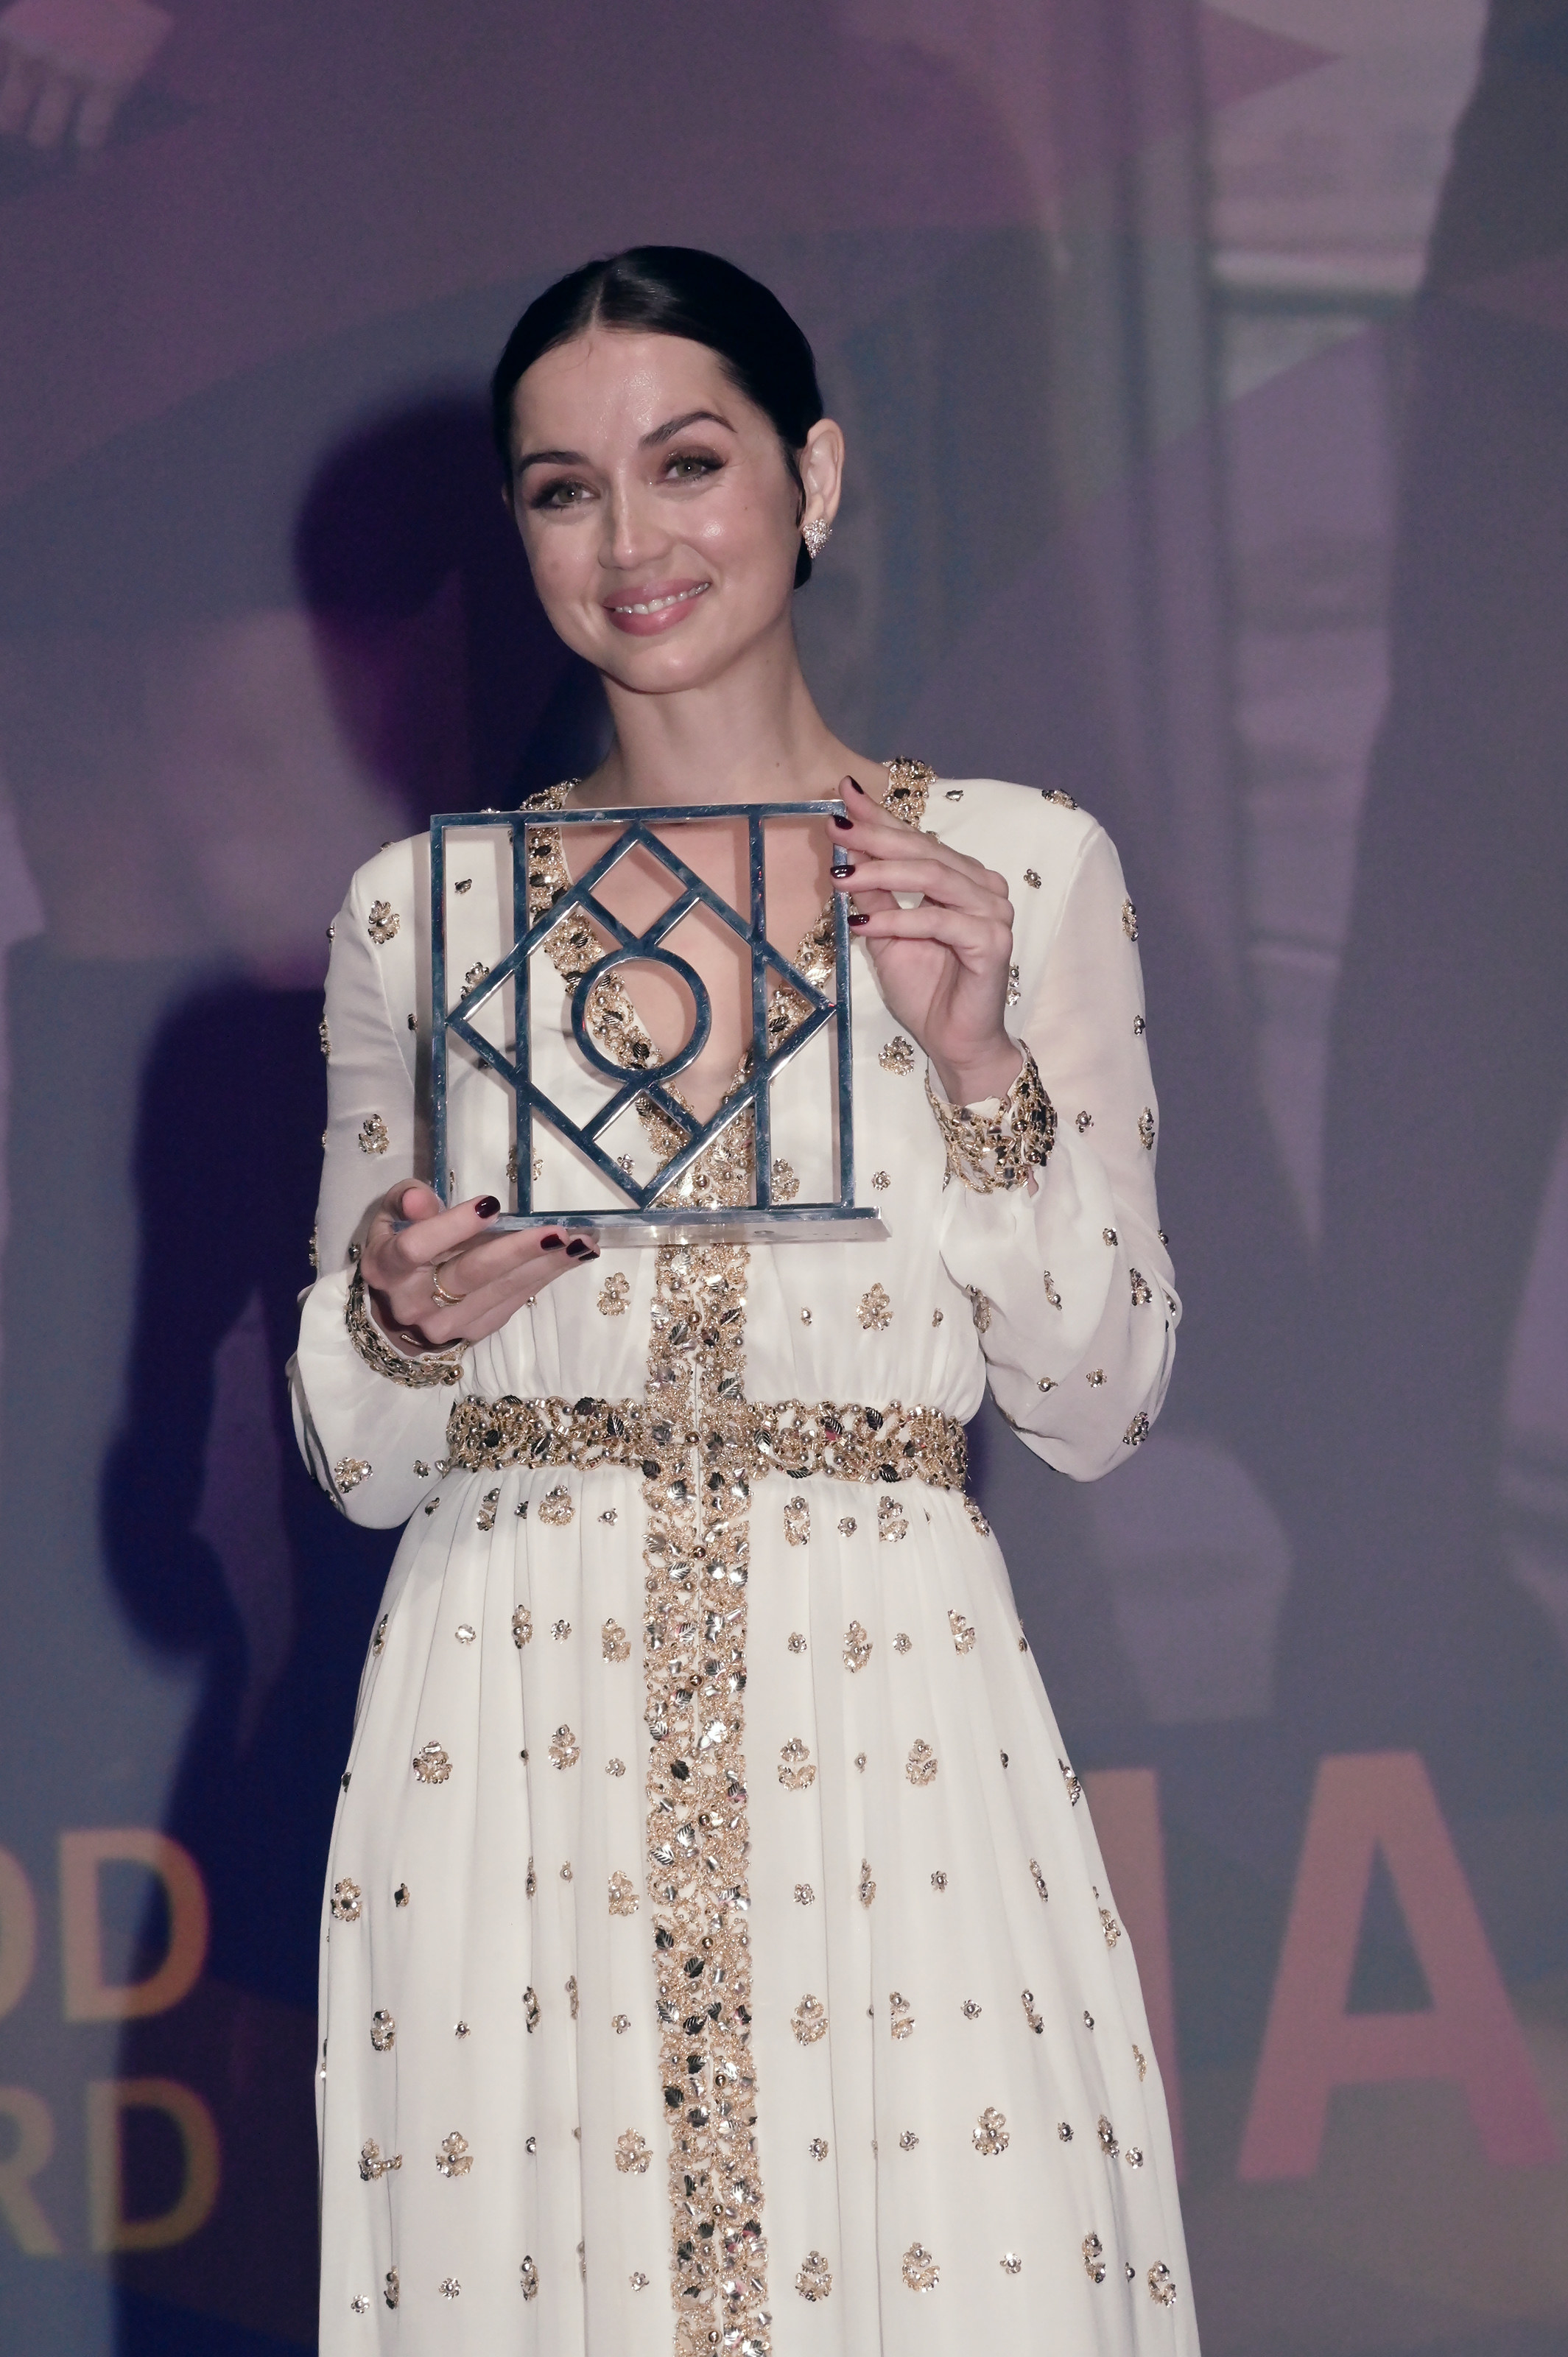 ana holding an award